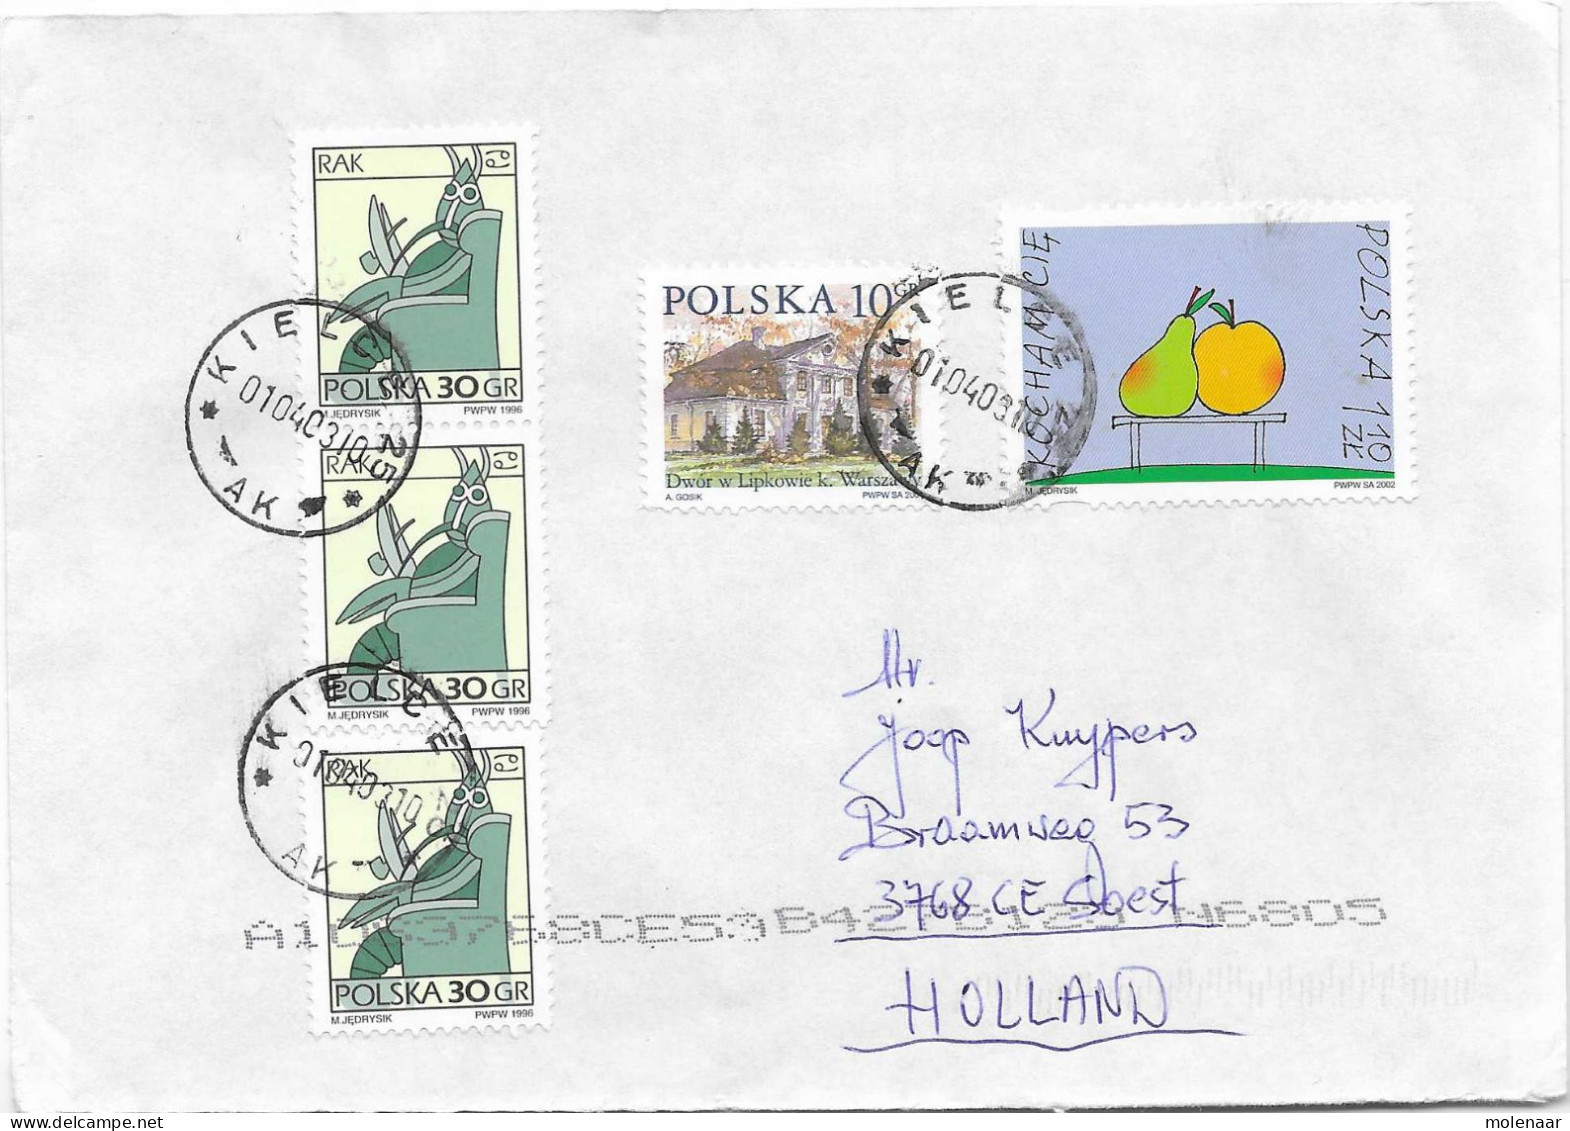 Postzegels > Europa > Polen > 1944-.... Republiek > 2001-10 > Brief Uit 2002 Met 5 Postzegels (17131) - Brieven En Documenten